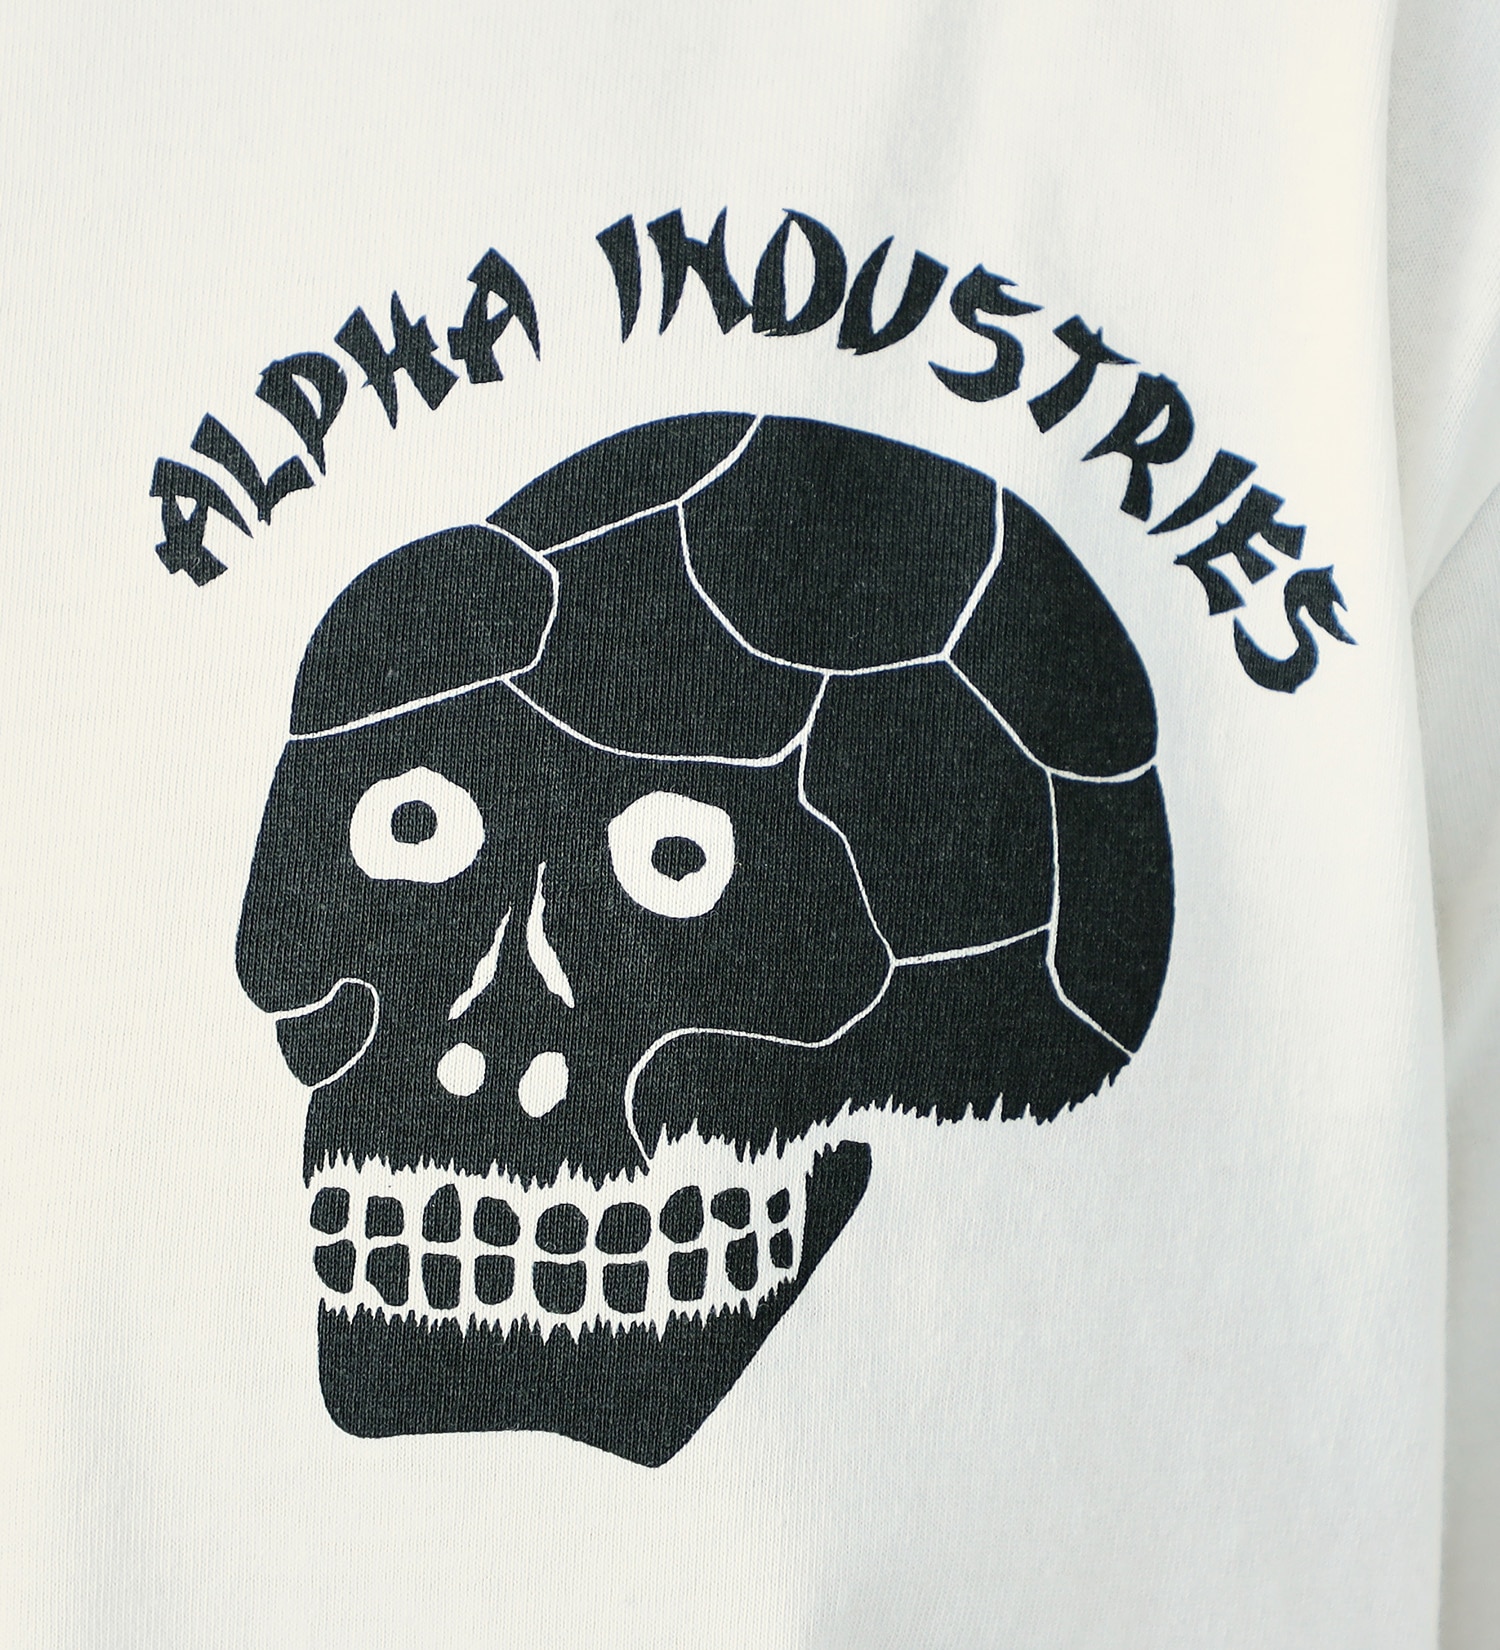 ALPHA(アルファ)のSKULL バックプリント長袖Tシャツ|トップス/Tシャツ/カットソー/メンズ|ホワイト